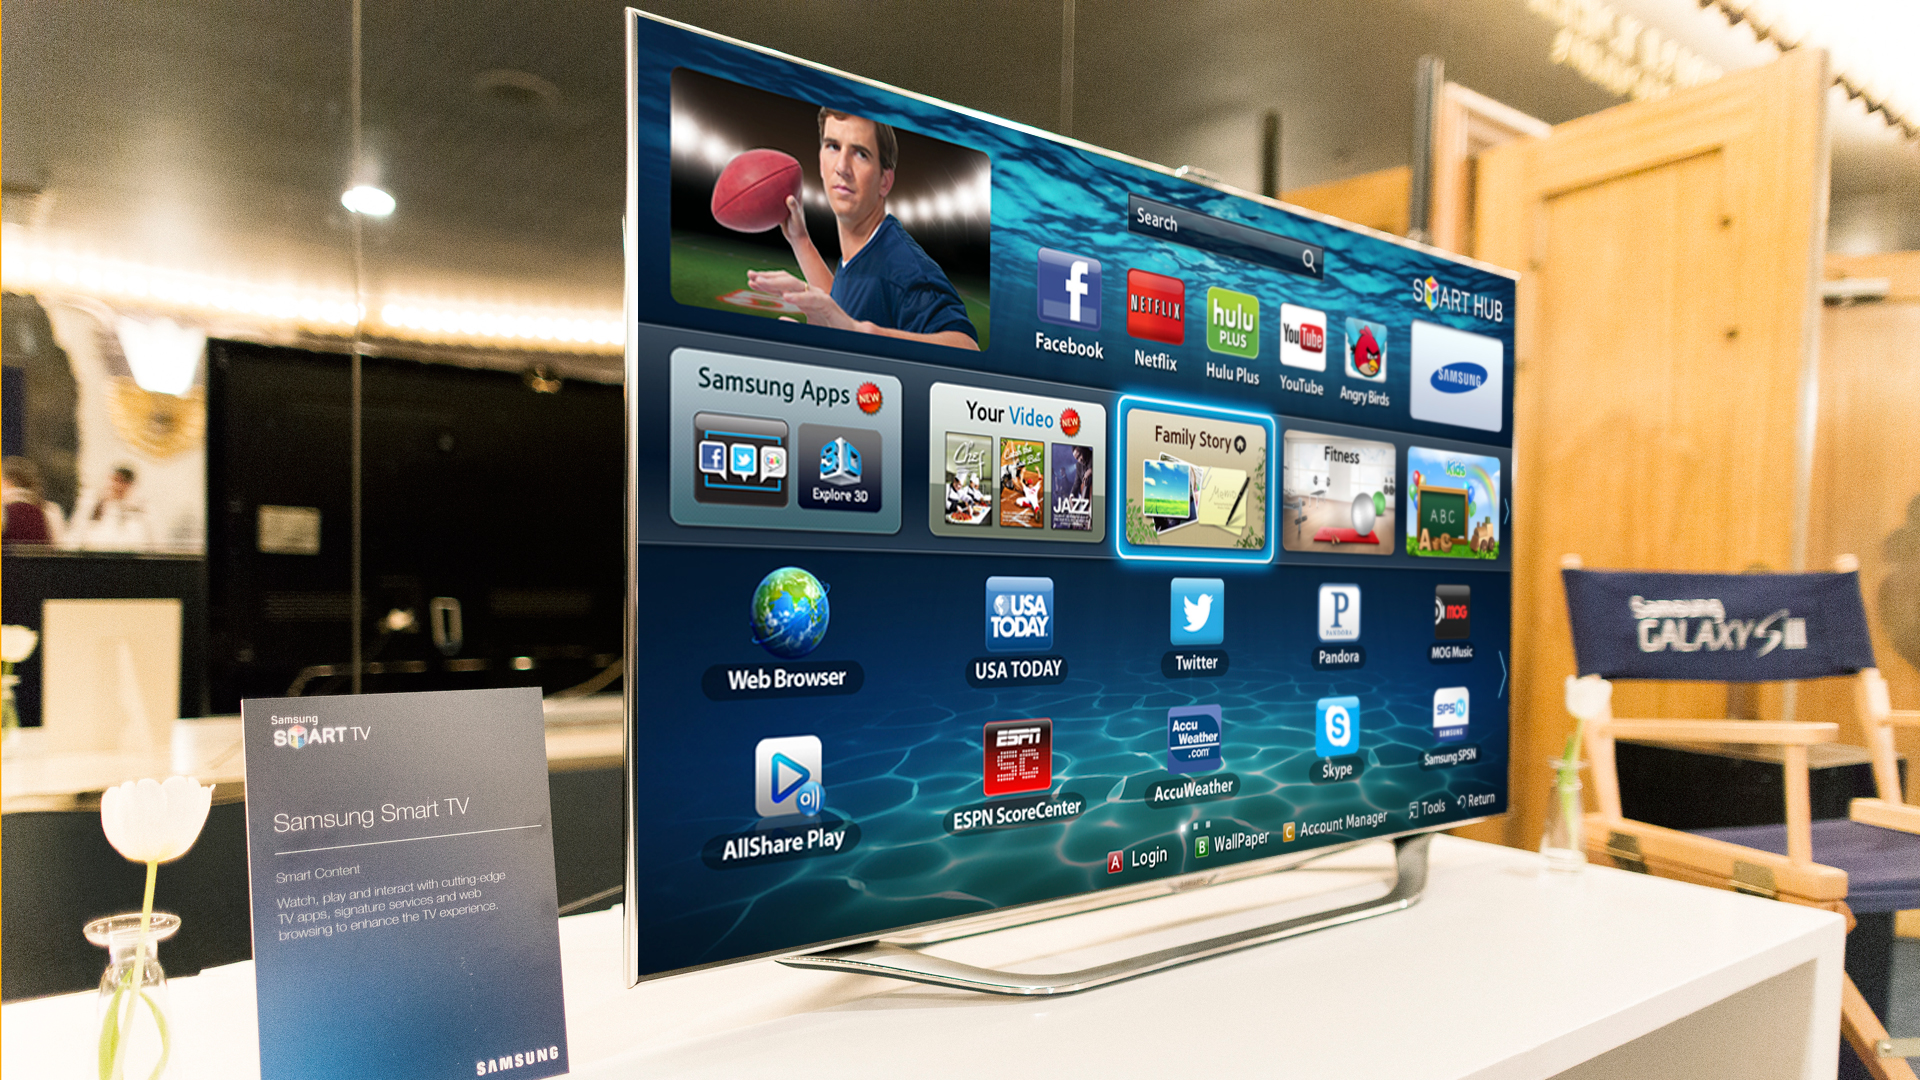 Samsung smart tv. Samsung Smart TV 2013. Телевизор Samsung Smart TV. Смарт телевизор самсунг самсунг.